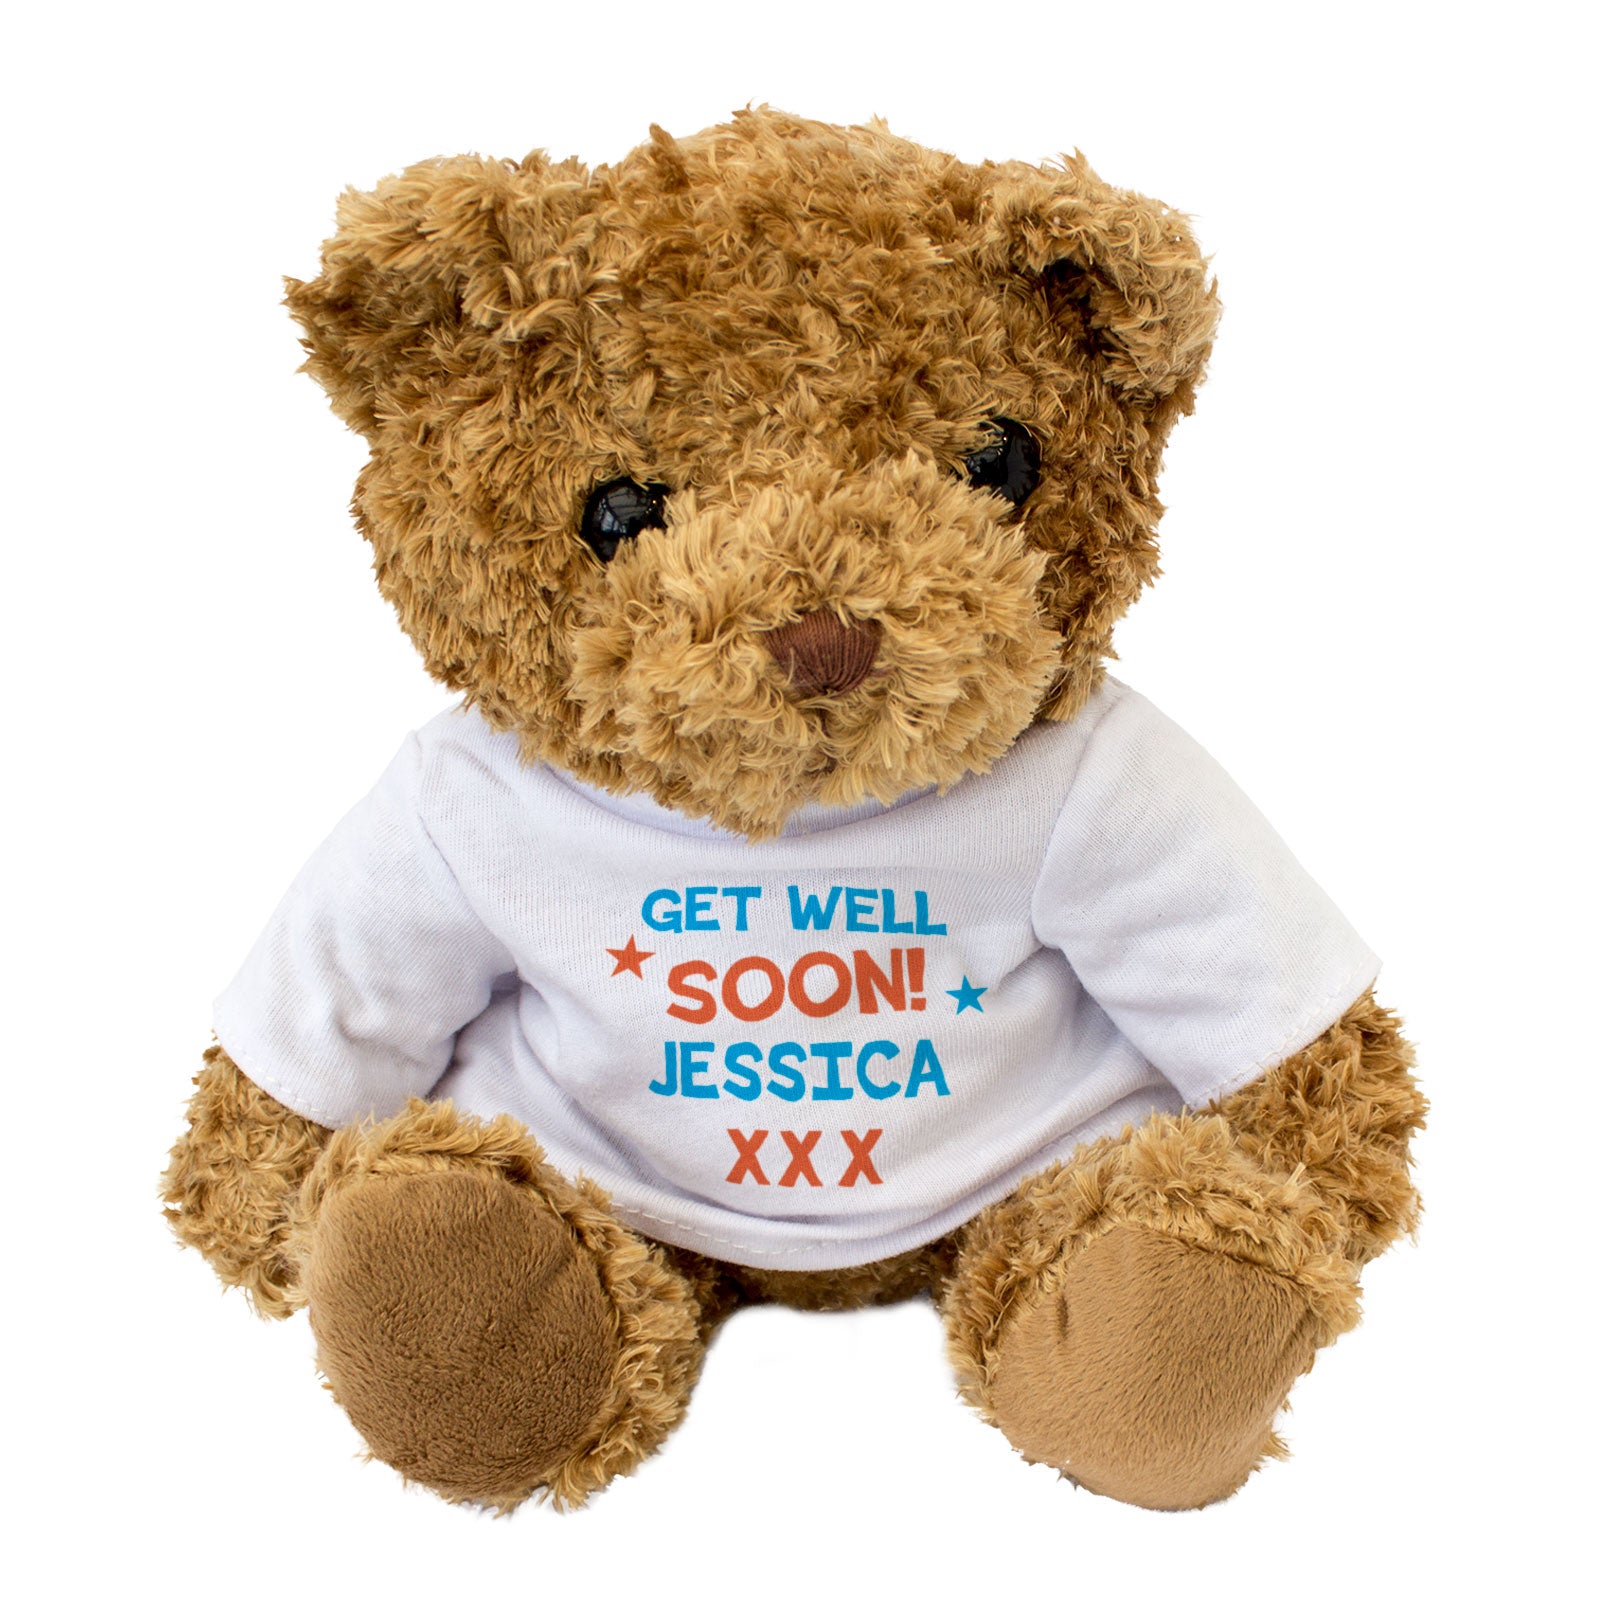 Get Well Soon Jessica - Teddy Bear